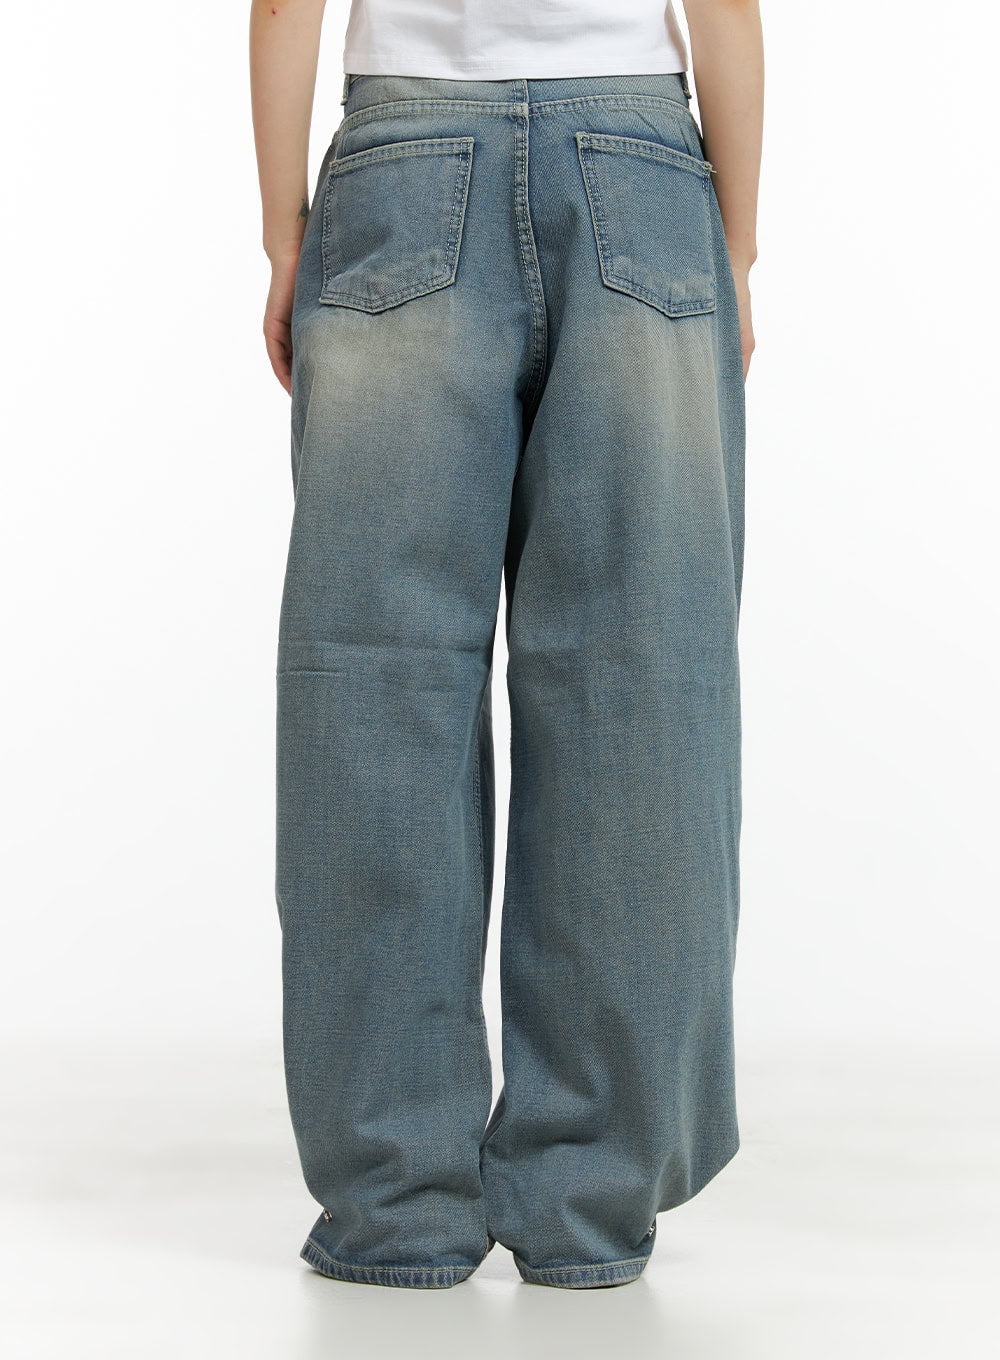 hem-snap-baggy-jeans-cl403